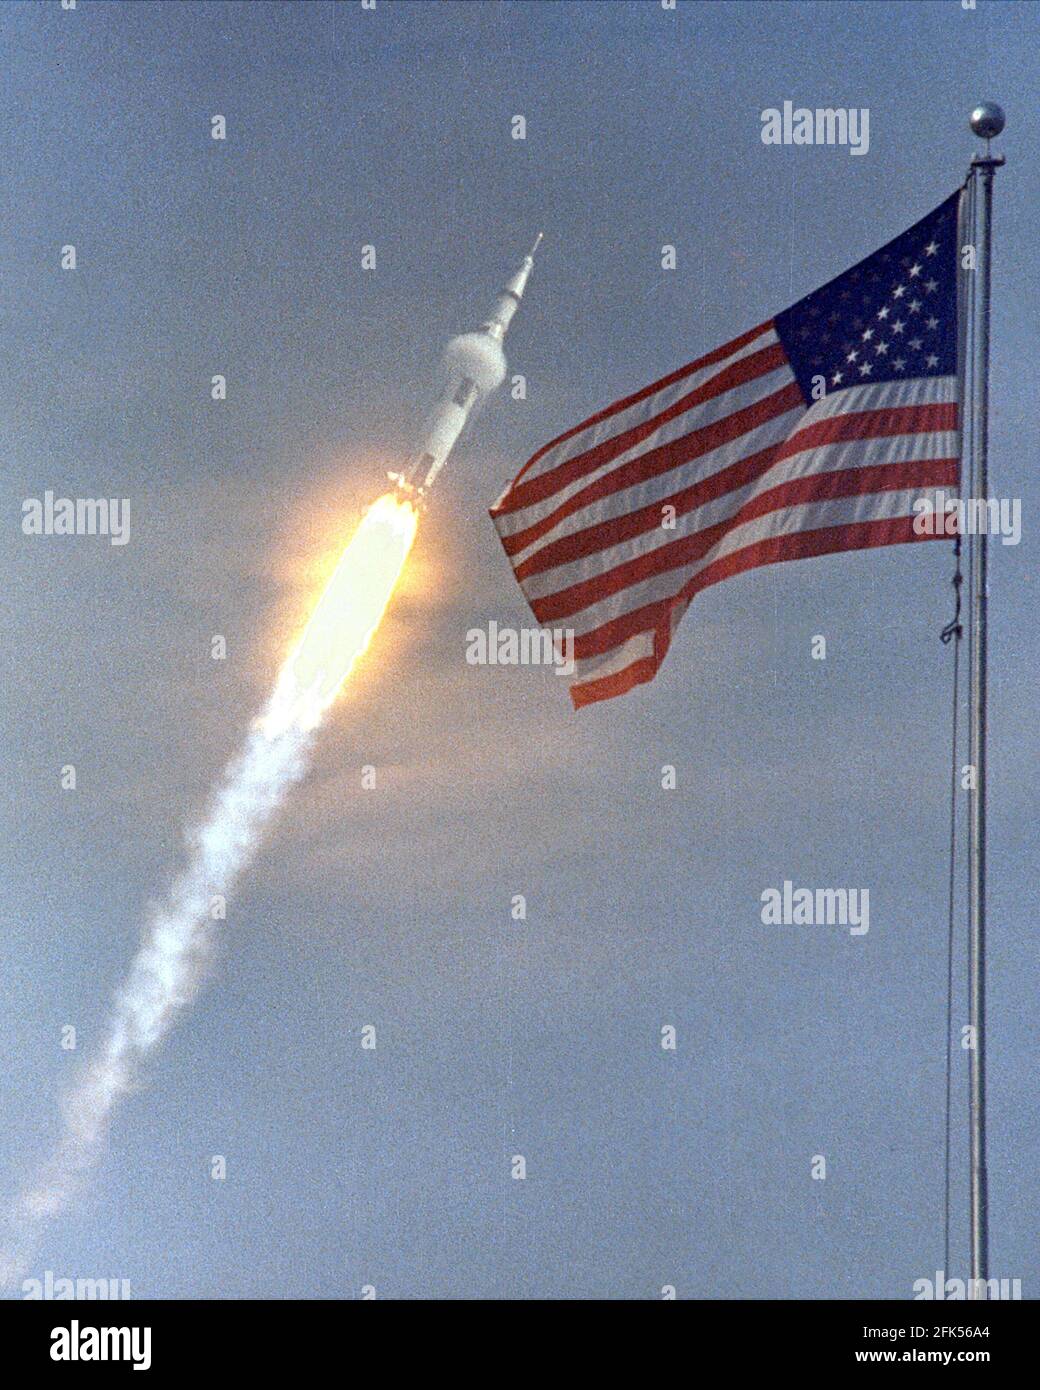 Cape Canaveral, FL - (Datei-) - die amerikanische Flagge läutet der Flug von Apollo 11, die erste Mondlandung Mission. Das Raumfahrzeug Apollo 11 Saturn V abgehoben mit Astronauten Michael Collins, Neil A. Armstrong und Edwin E. Aldrin, Jr., um 9:32 Uhr EDT 16. Juli 1969, vom Kennedy Space Center Launch Complex 39A. Während der geplanten acht-Tage-Mission wird Armstrong und Aldrin absteigen in einer Mondlandefähre auf der Oberfläche des Mondes während Collins Mehraufwand bei der Monitorbox umkreist. Die beiden Astronauten sollen auf dem Mond, einschließlich zwei und eine halbe Stunden außerhalb der Mondfähre 22 Stunden verbringen. Th Stockfoto